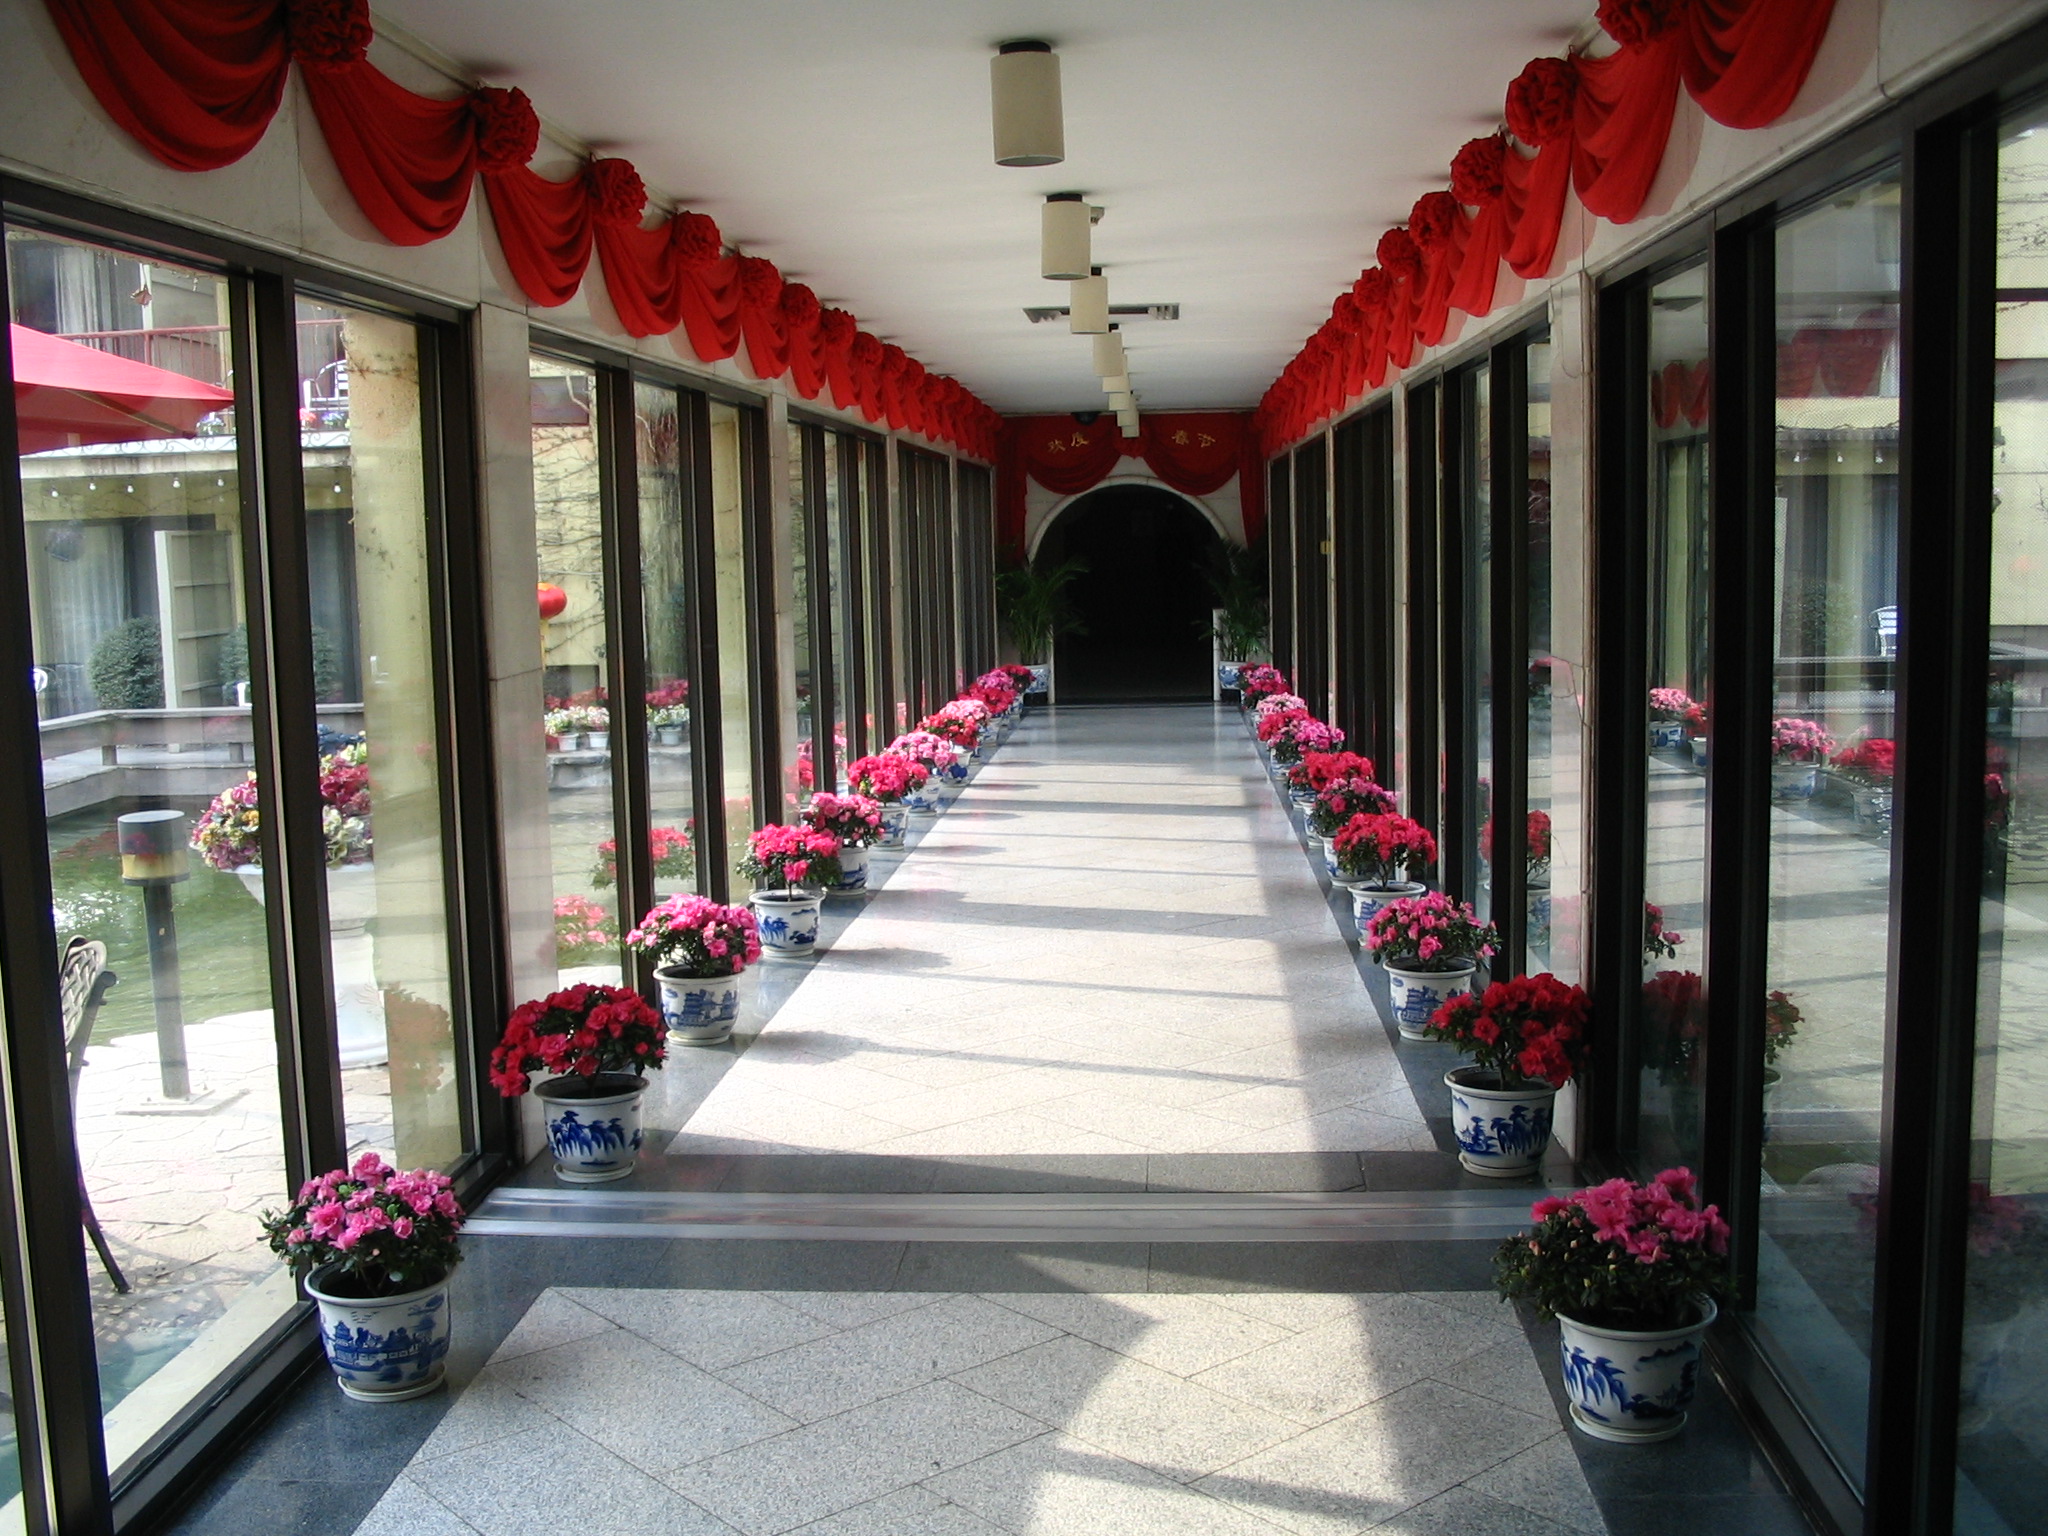 酒店走廊花卉摆放